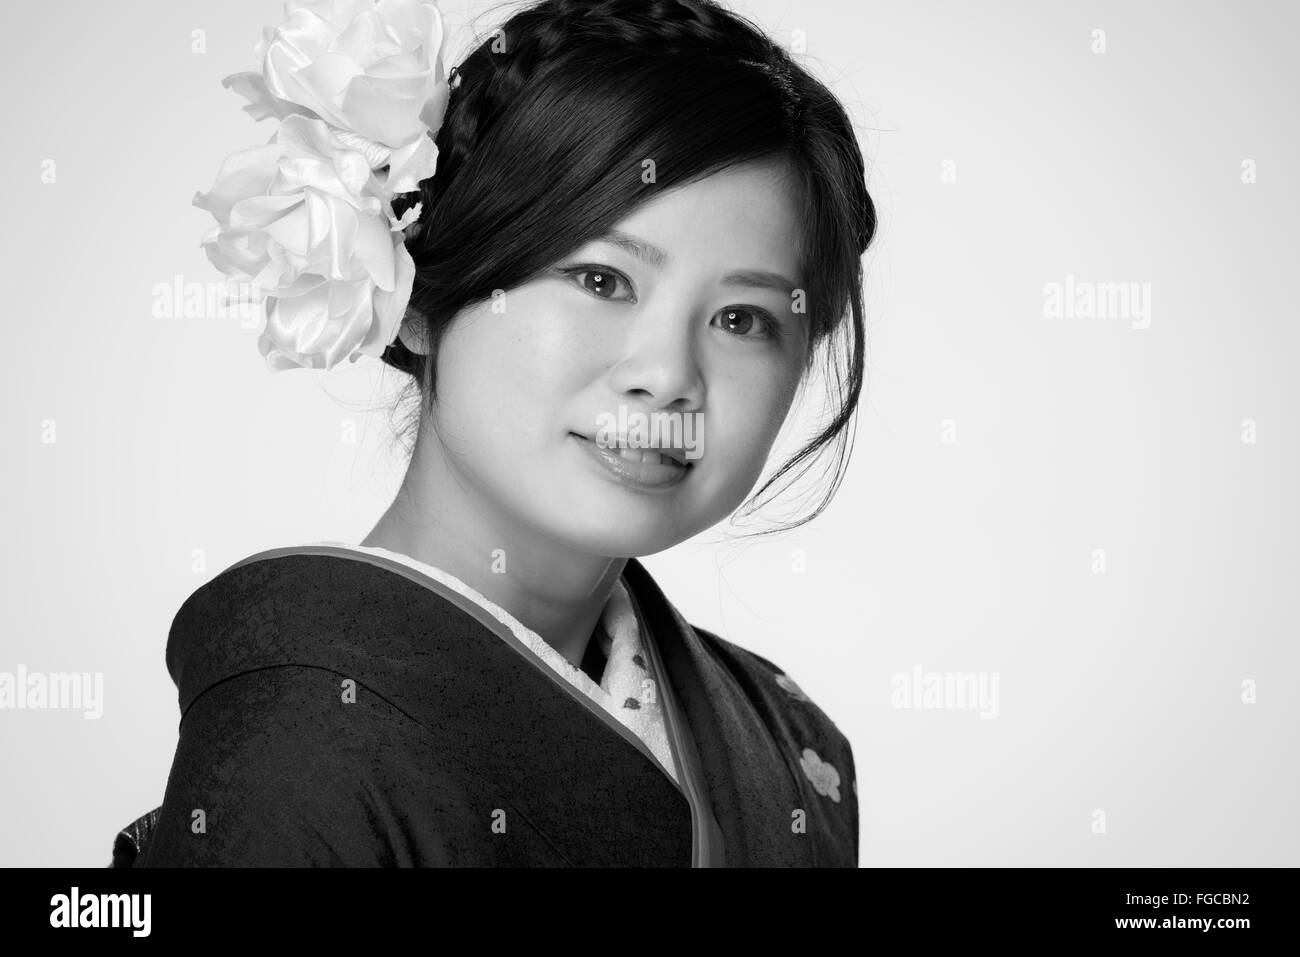 Un ritratto di una giovane e bella ragazza giapponese in un kimono blu per la sua venuta di età cerimonia il suo ventesimo compleanno. Foto Stock